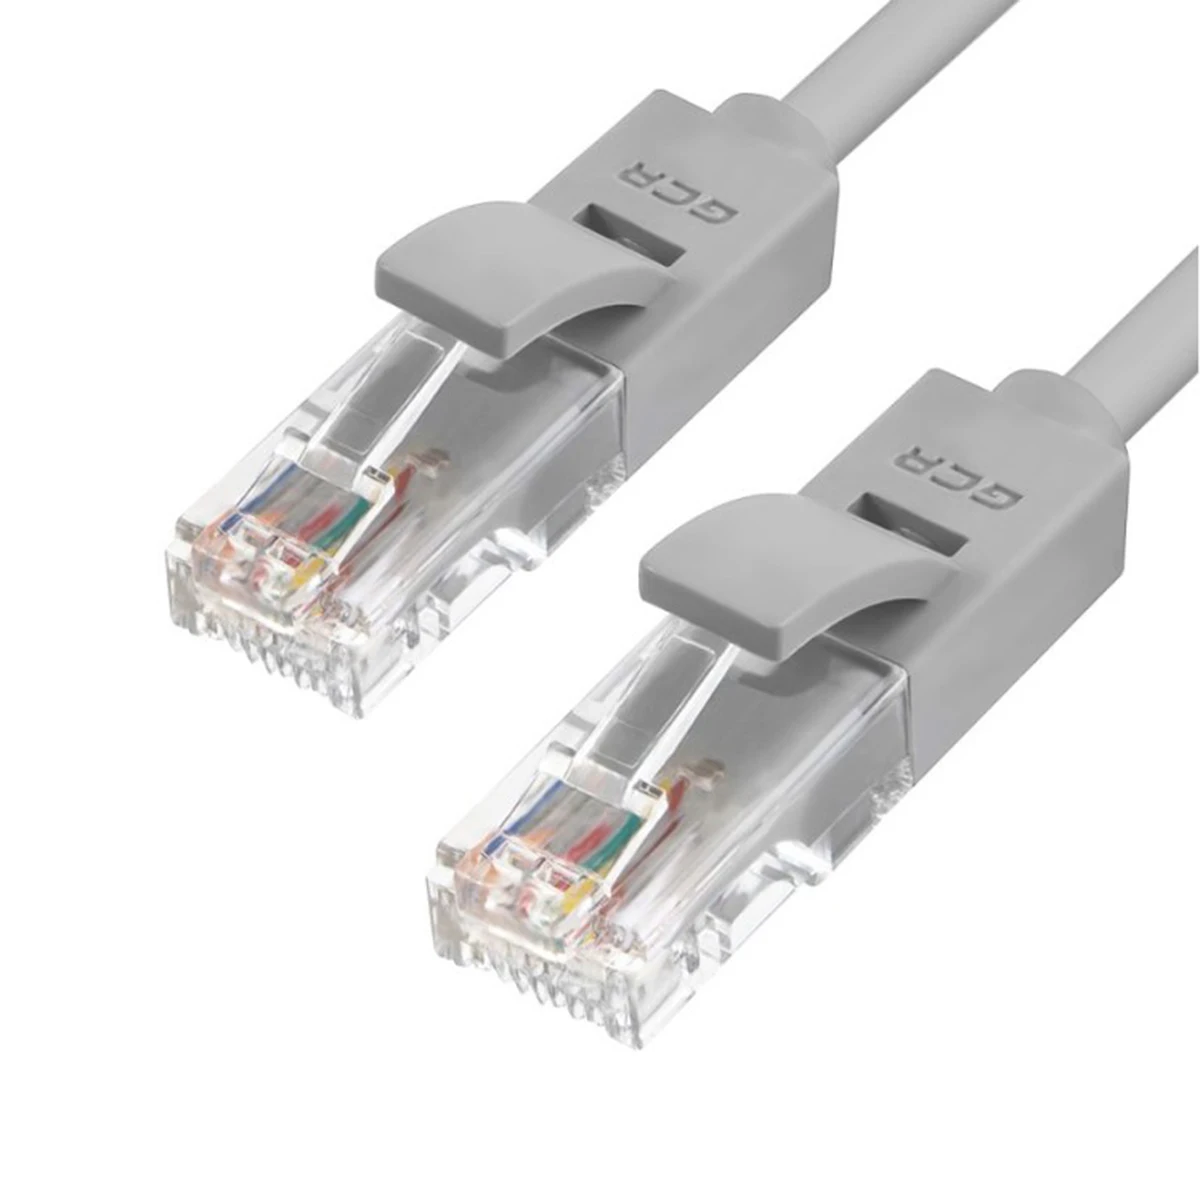 Купить кабель интернет магазин. Патч-корд rj45-rj45. Кабель патч корд rj45. Сетевой кабель GCR UTP Cat.5e rj45 t568b 2.0m GCR-52678. Кабель-патч корд Ethernet (для НК-3).